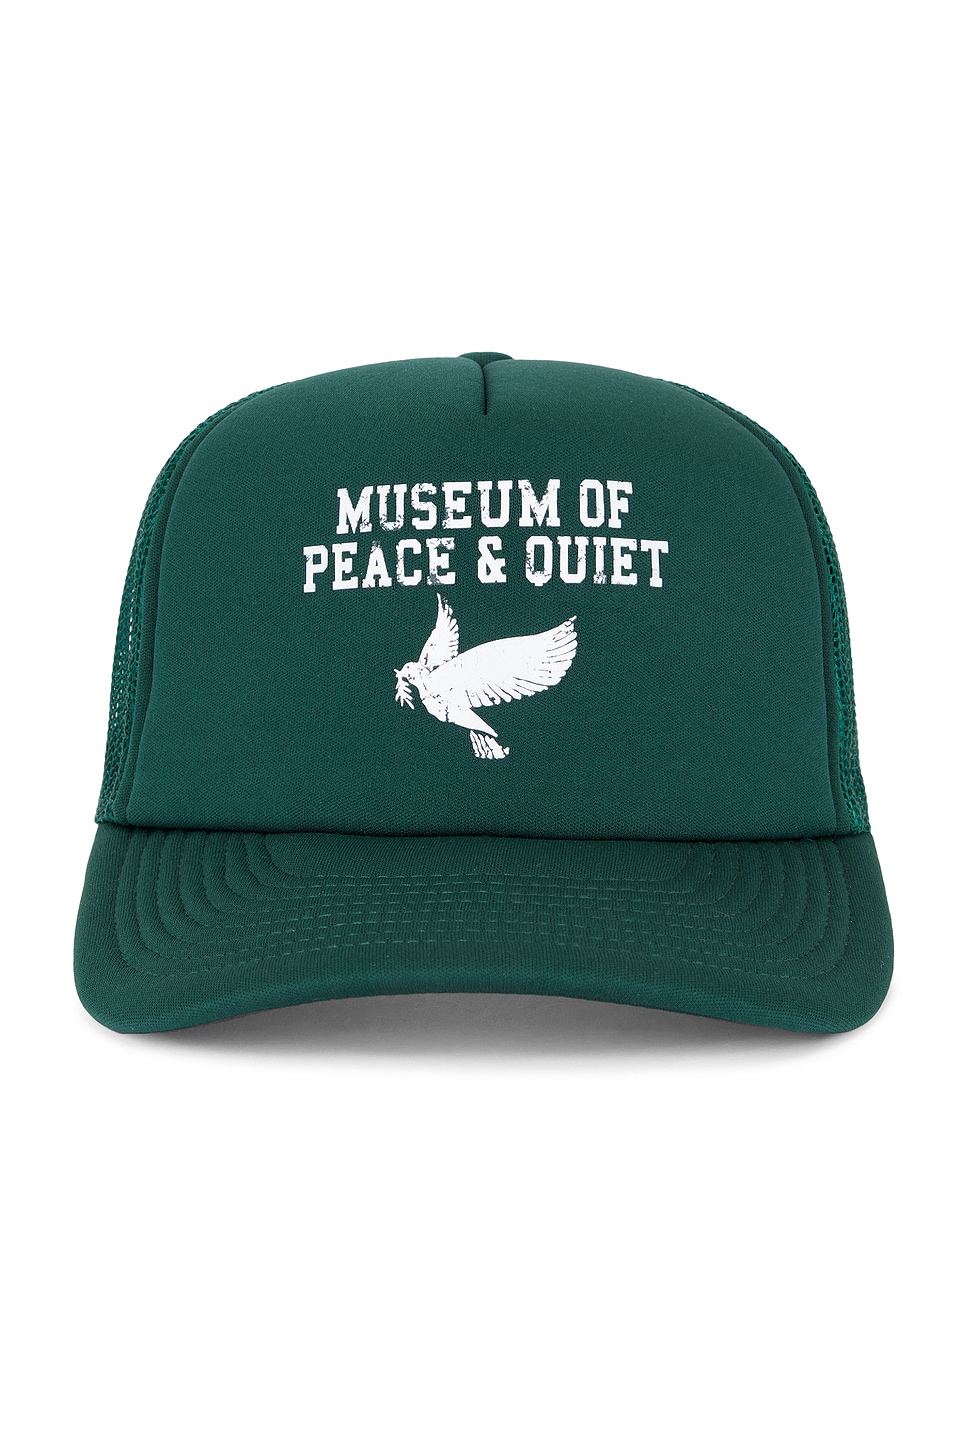 P.E. Trucker Hat in Green